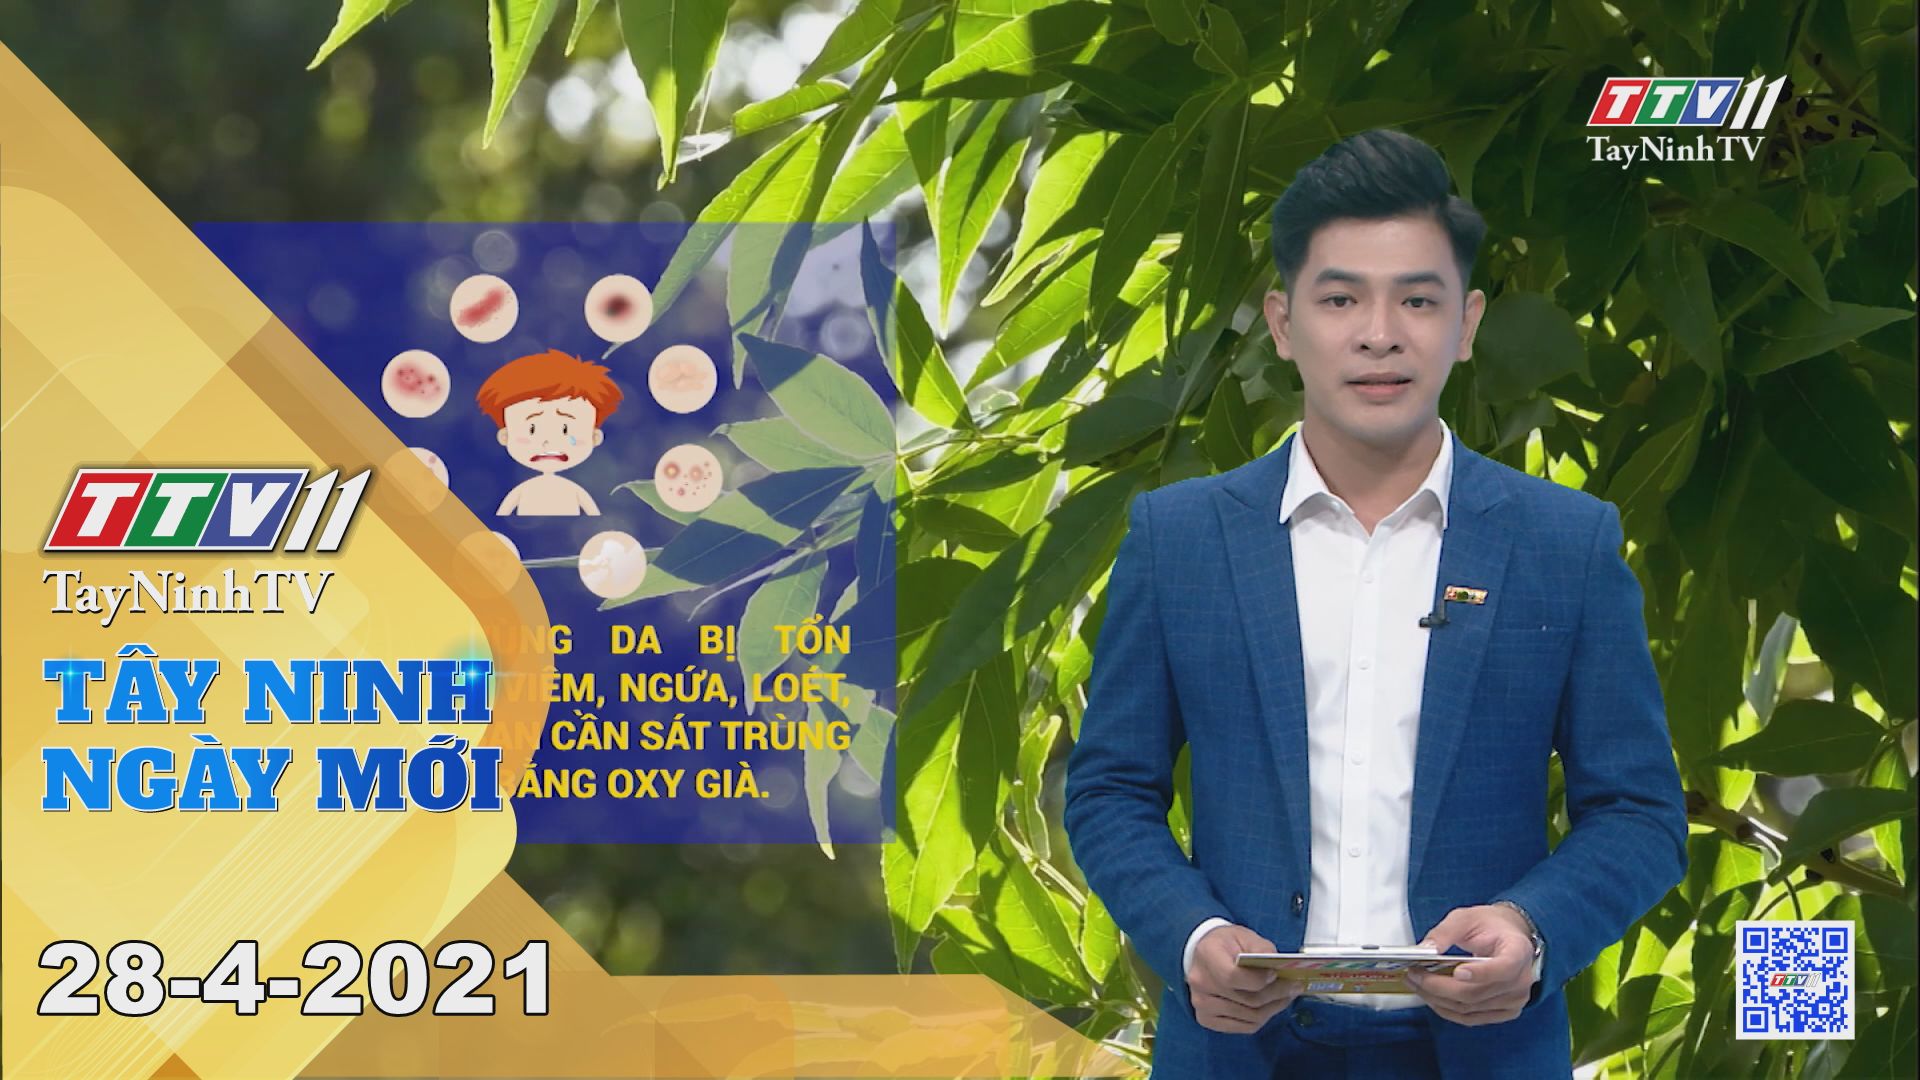 Tây Ninh Ngày Mới 28-4-2021 | Tin tức hôm nay | TayNinhTV